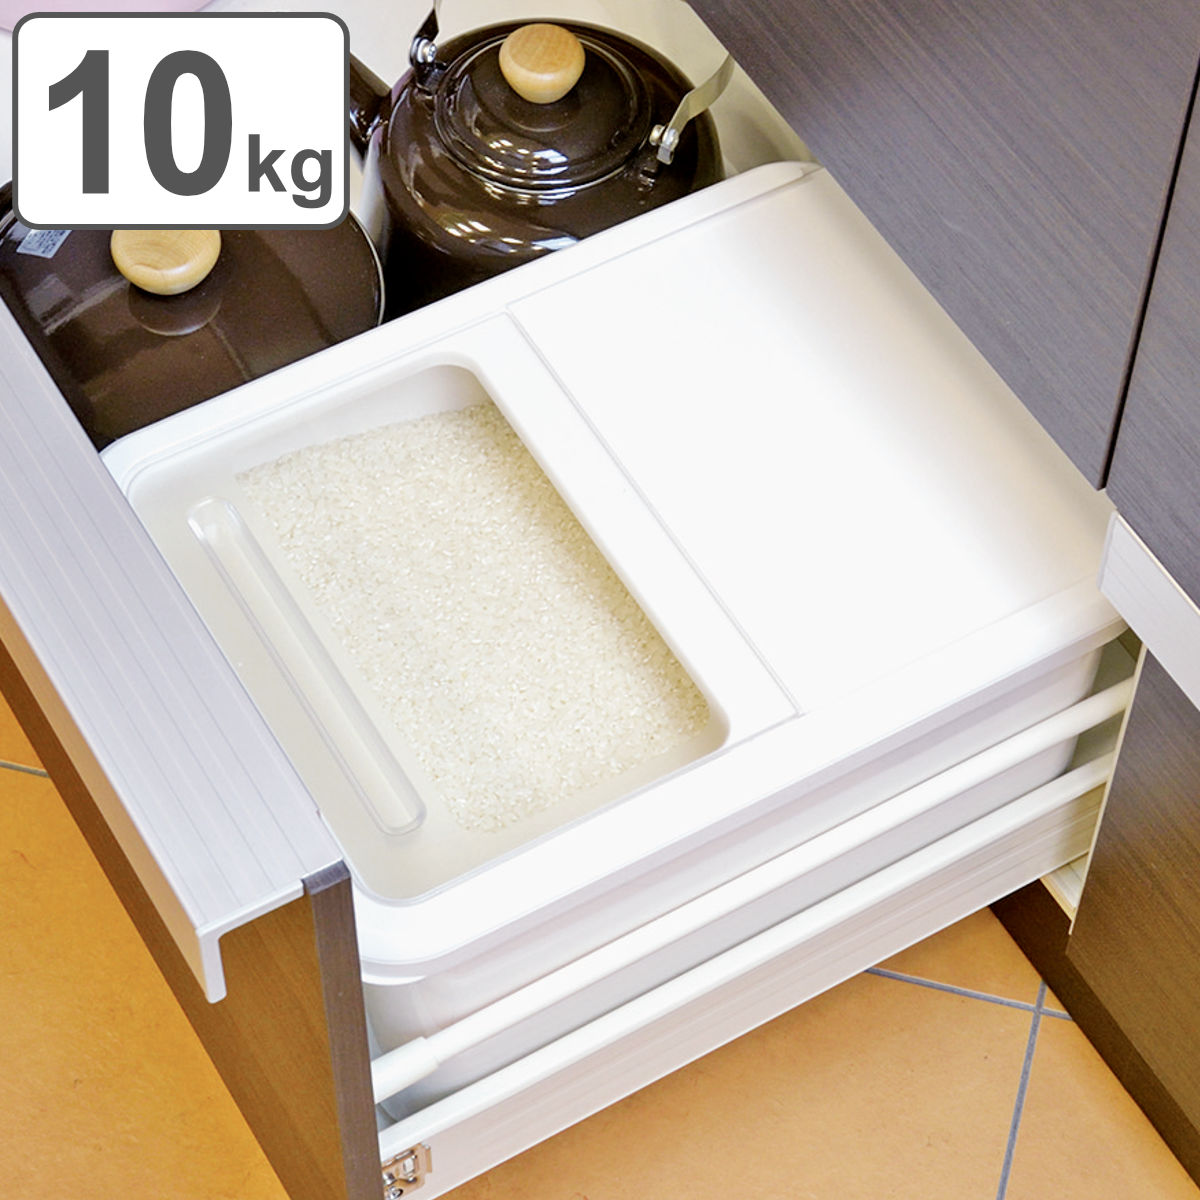 米びつ 10kg 引出し収納米びつ10kg用 （ 日本製 計量カップ付き プラスチック 冷蔵庫 引き出し 引出し 米櫃 こめびつ ライスボックス お